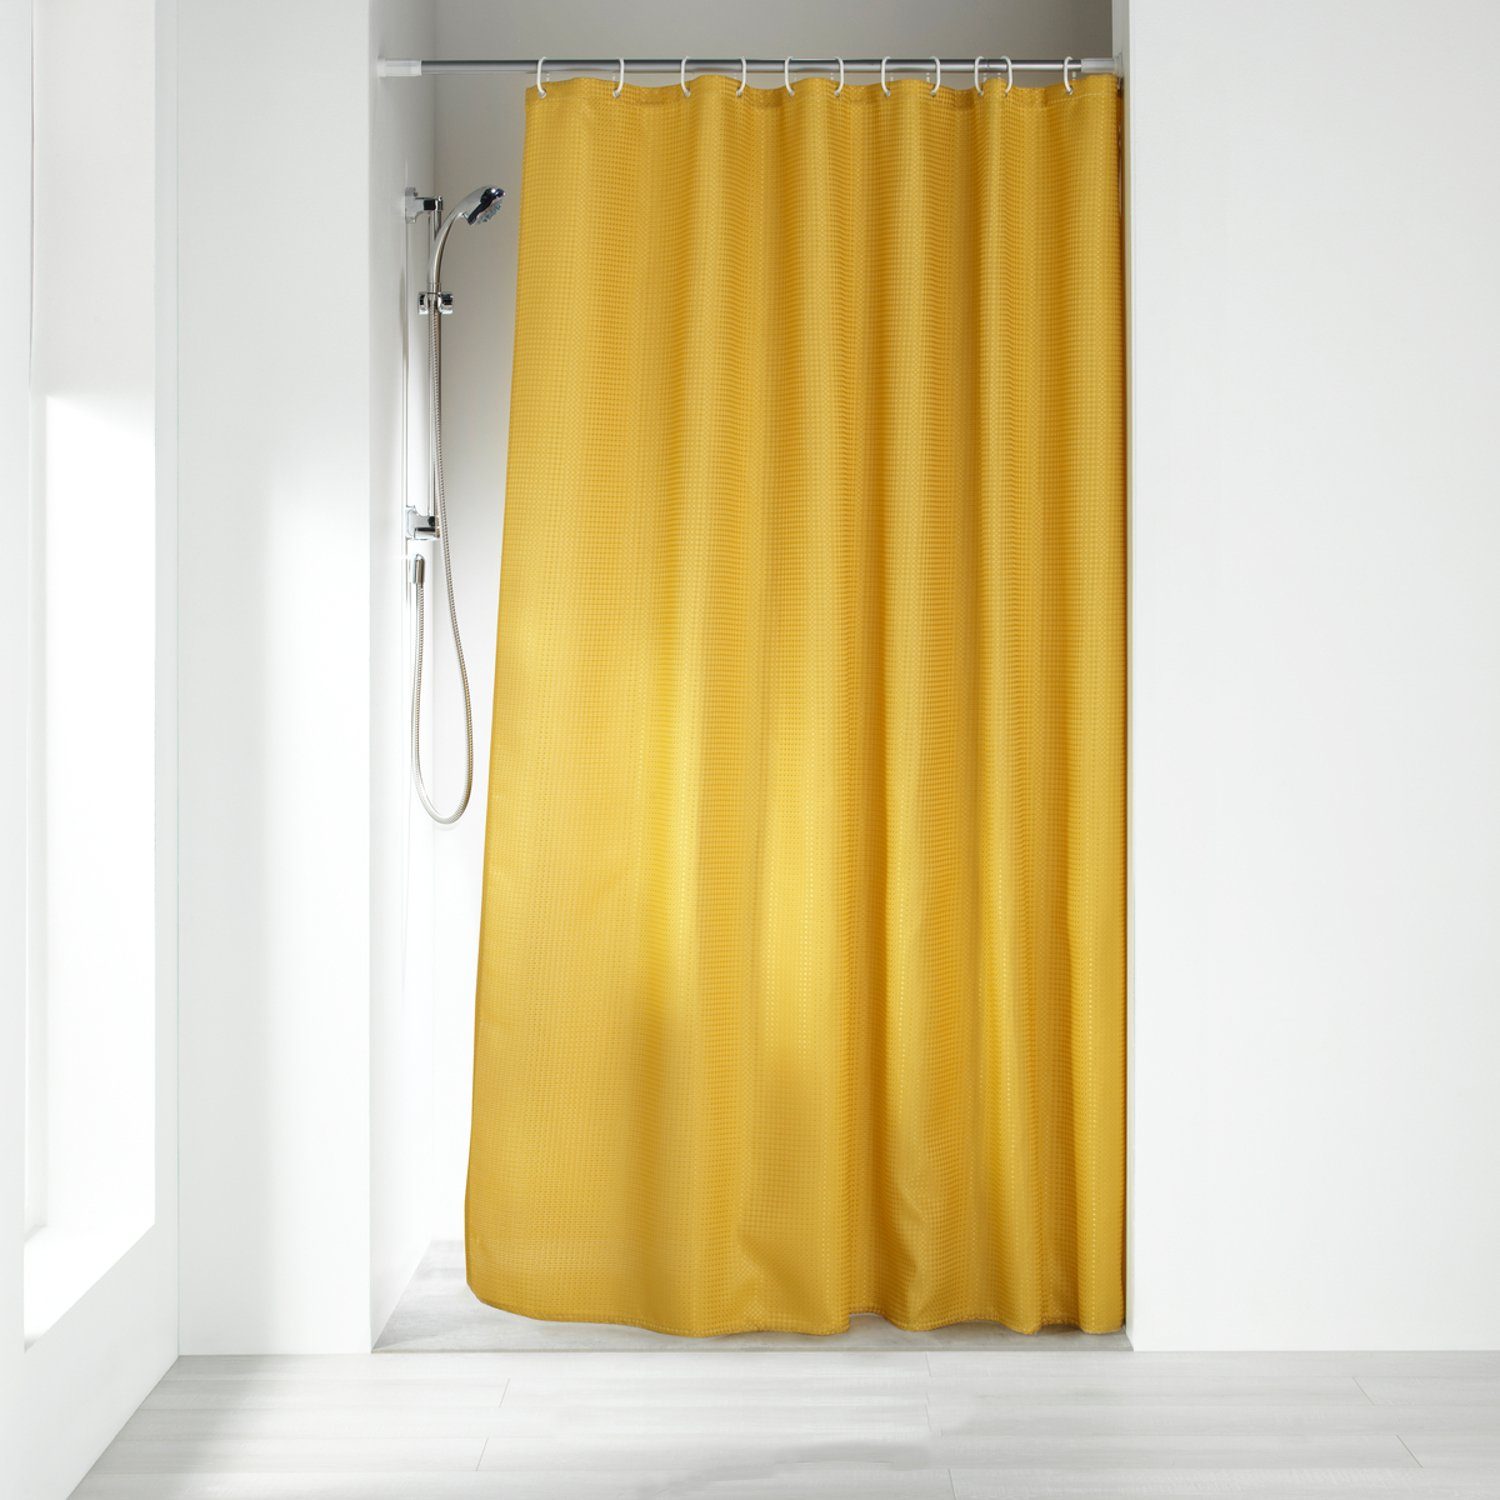 Sanixa Duschvorhang super weich, kein kleben an Wanne oder Körper,  Duschvorhang Textil 180x200 cm Grün oder Gelb Jaquard Muster